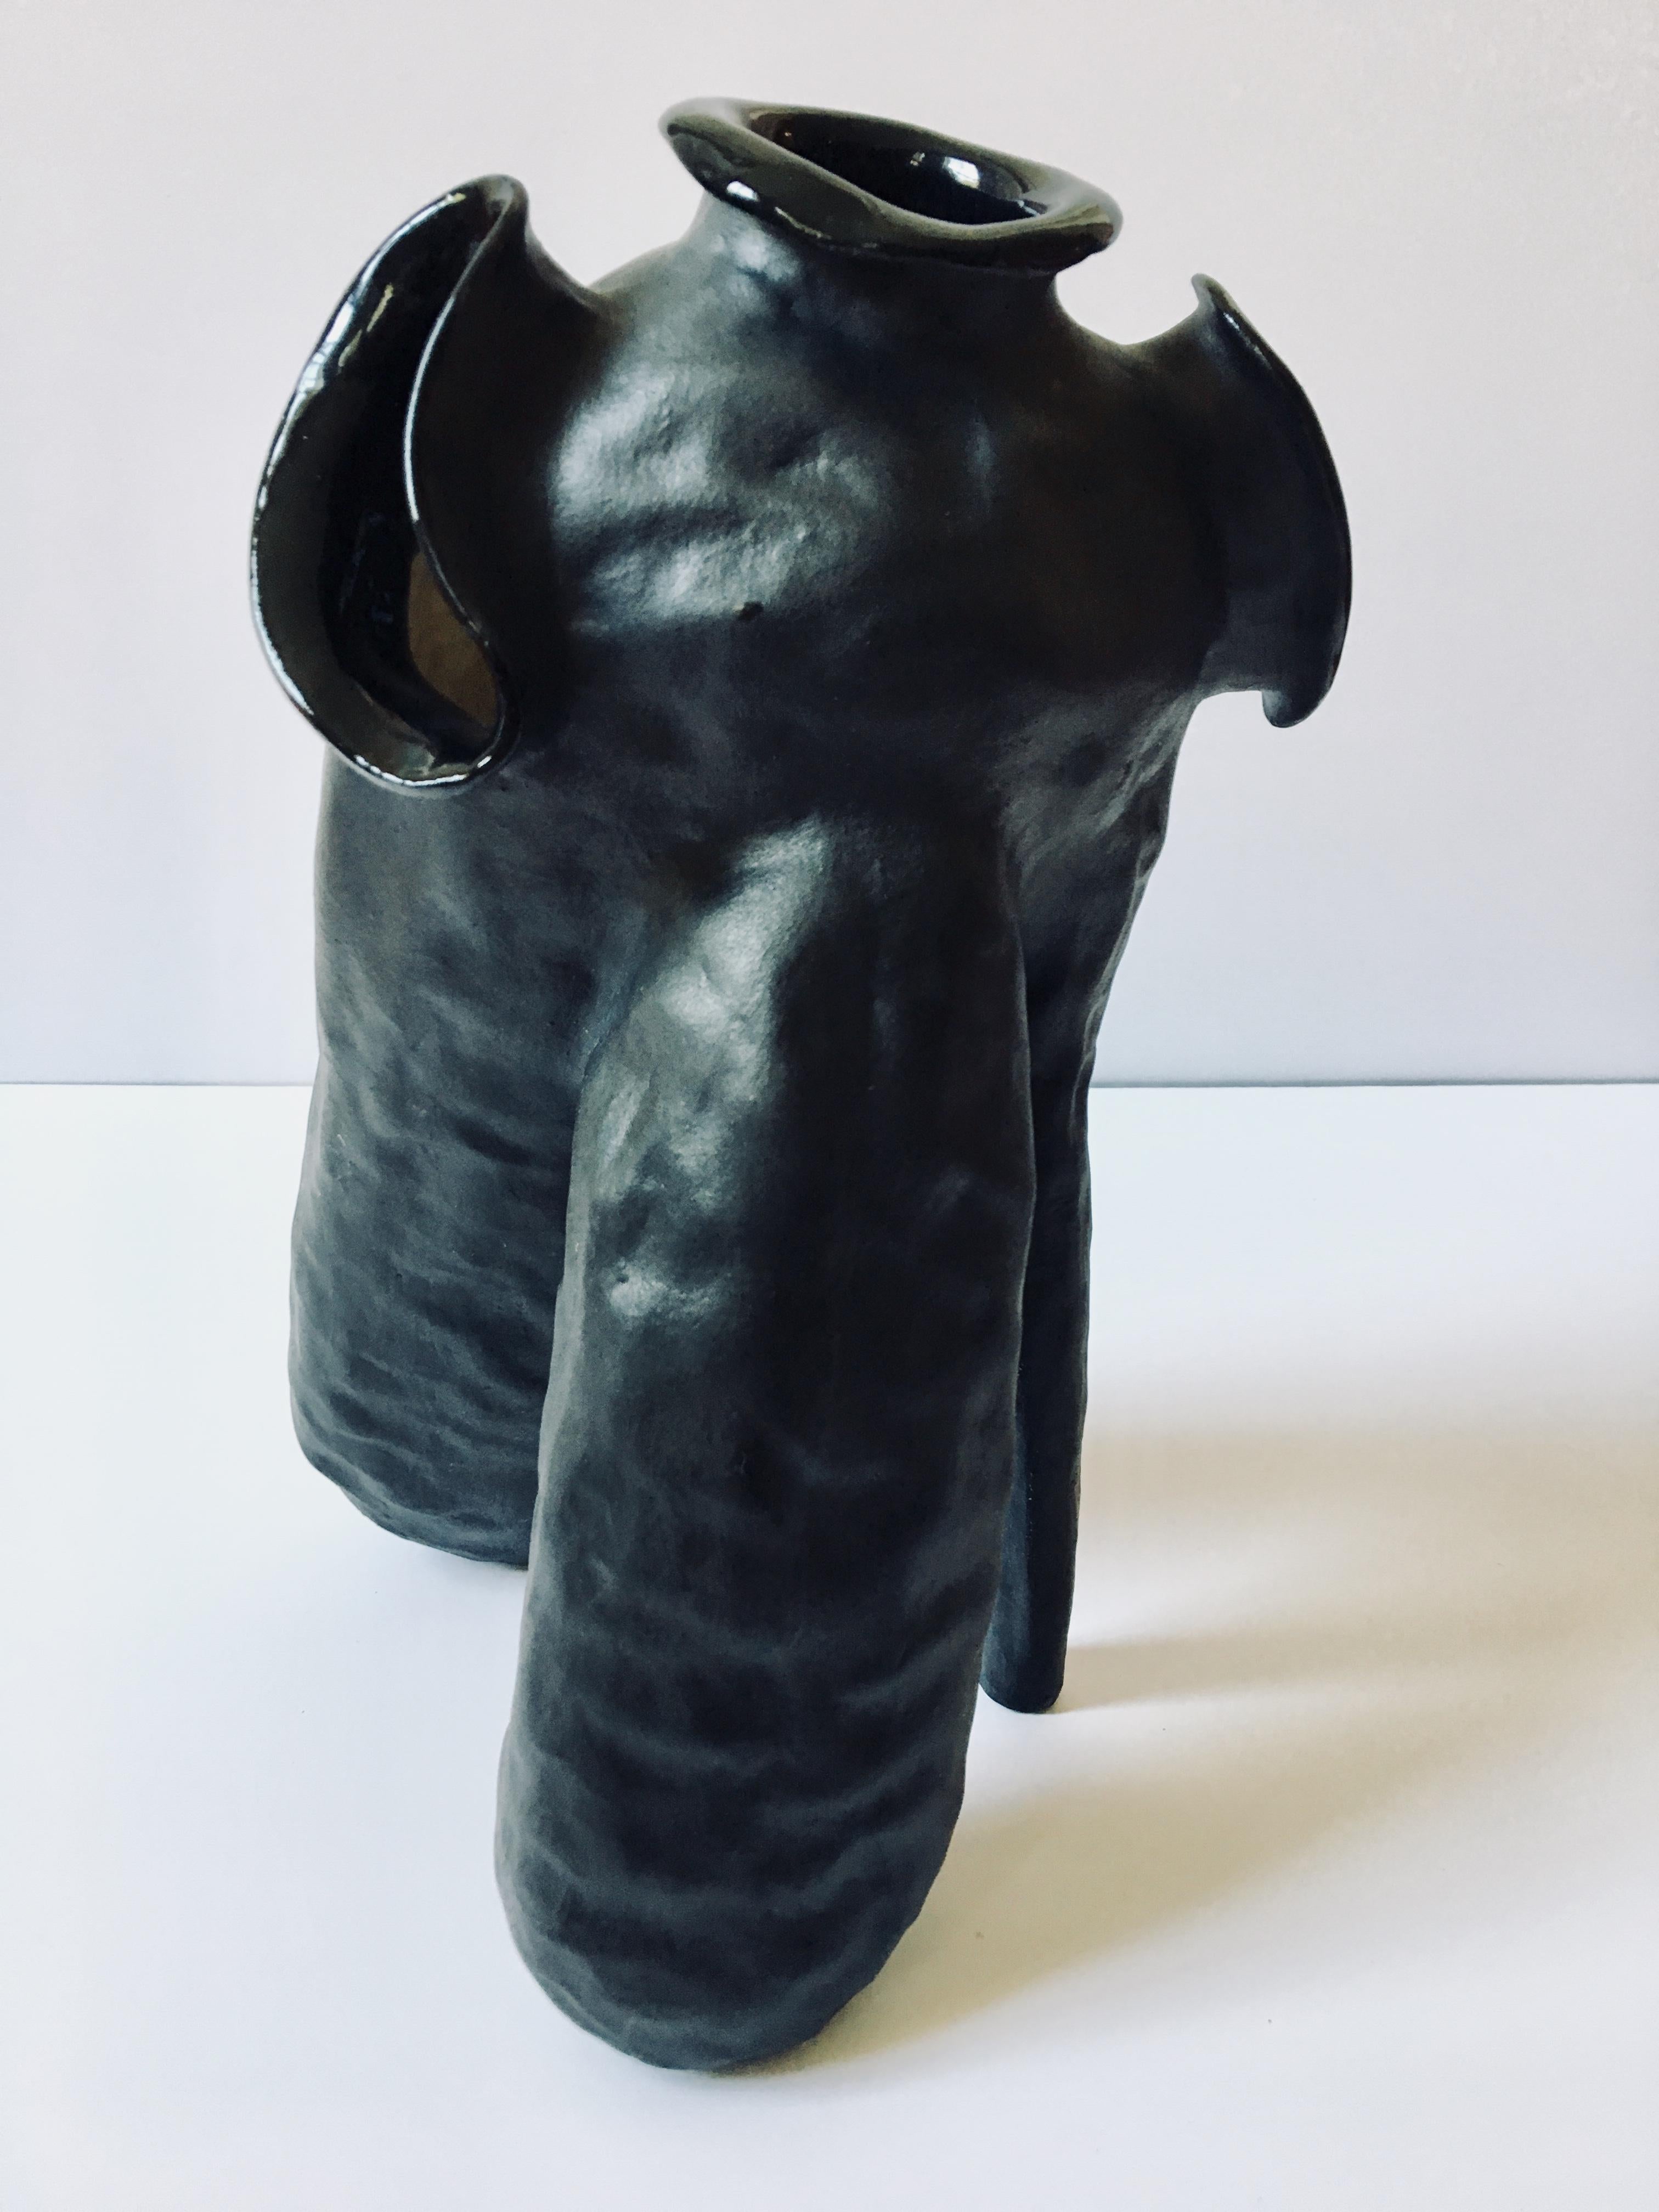 Sculpture of black ceramic vessel: 'Creature Medium No 6' 2